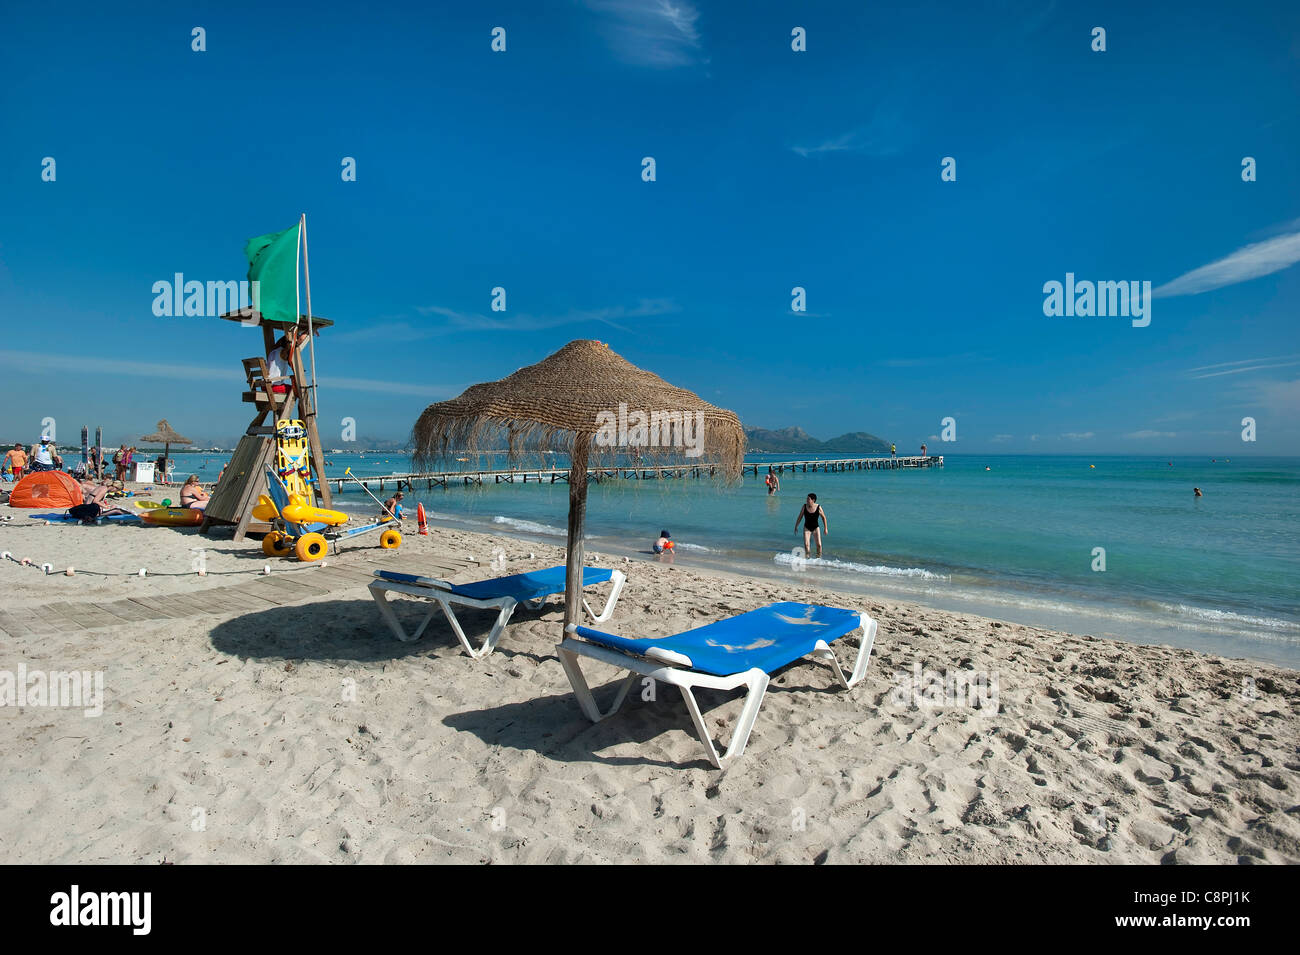 Playa de Muro, Alcudia, Majorque, Baleares, Espagne Banque D'Images